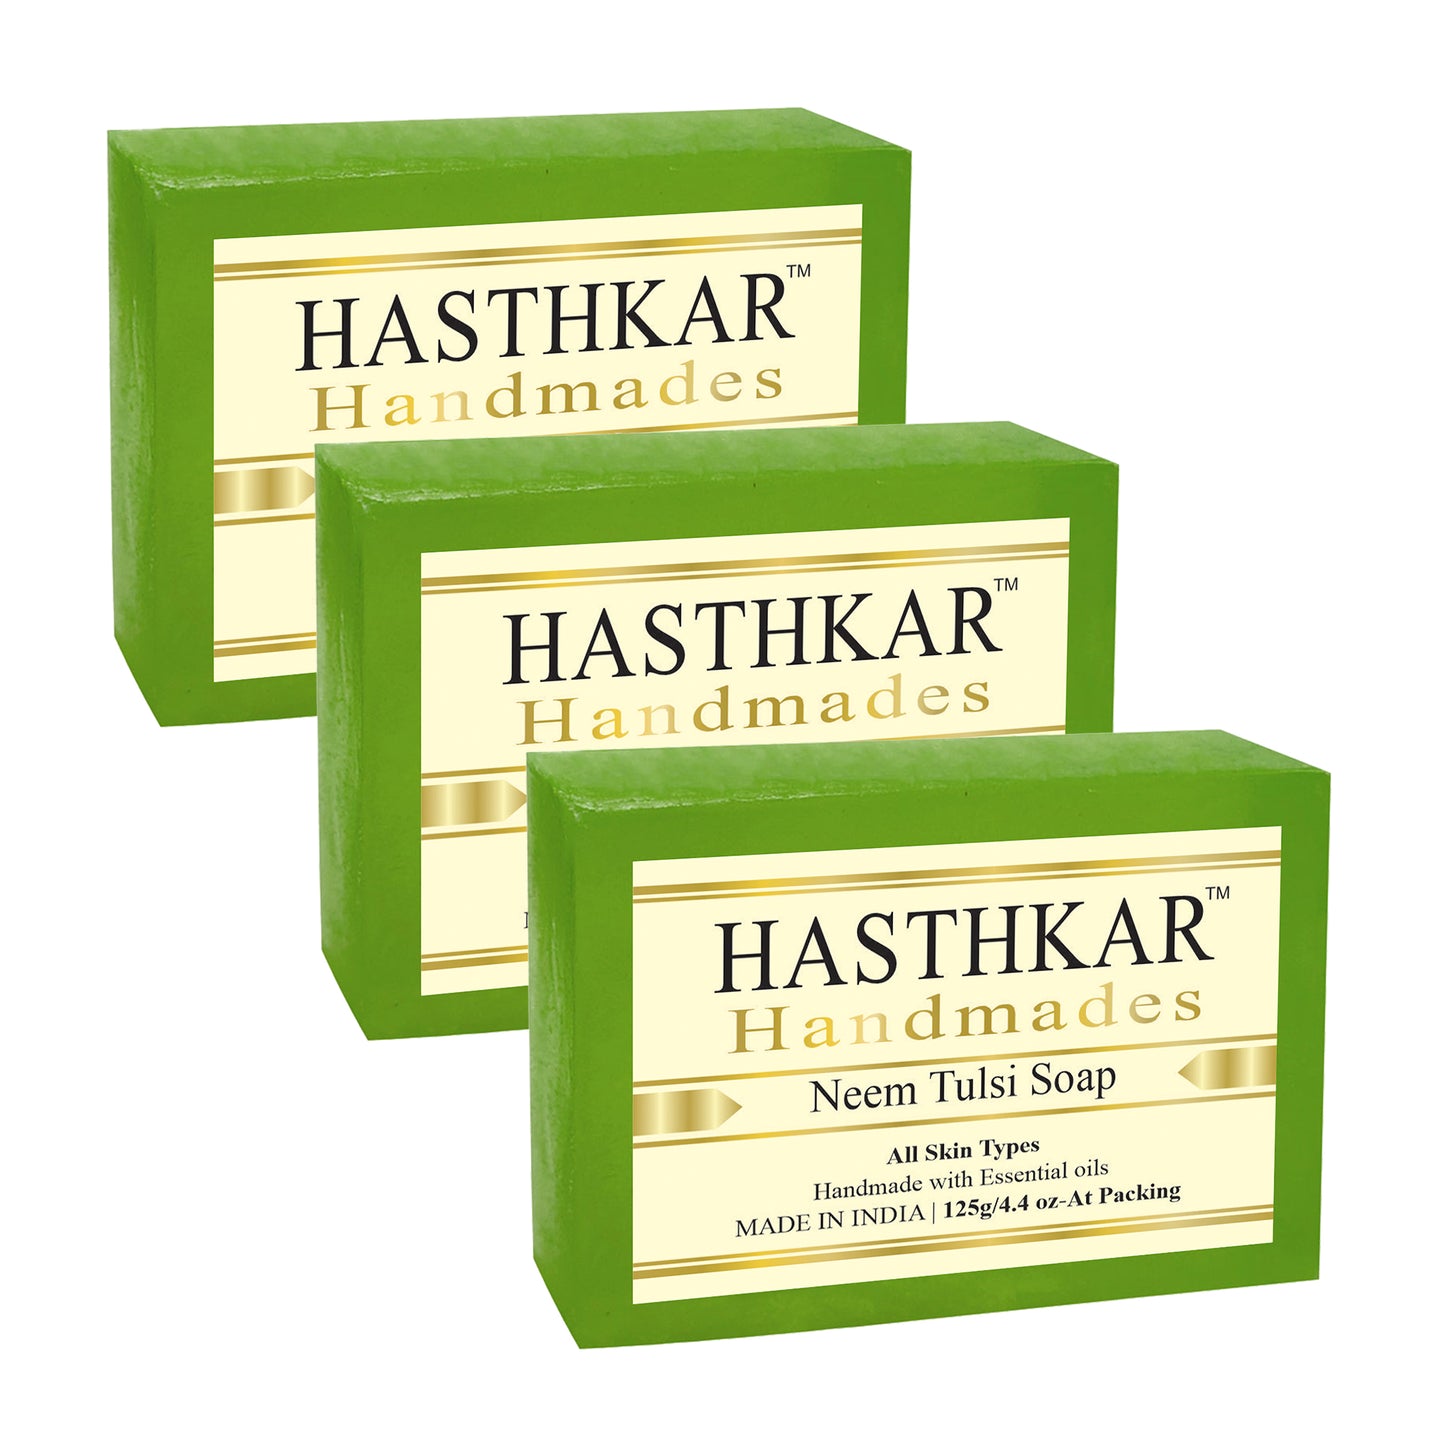 Hasthkar handmades neem tulsi bathing soap men women pack of 3